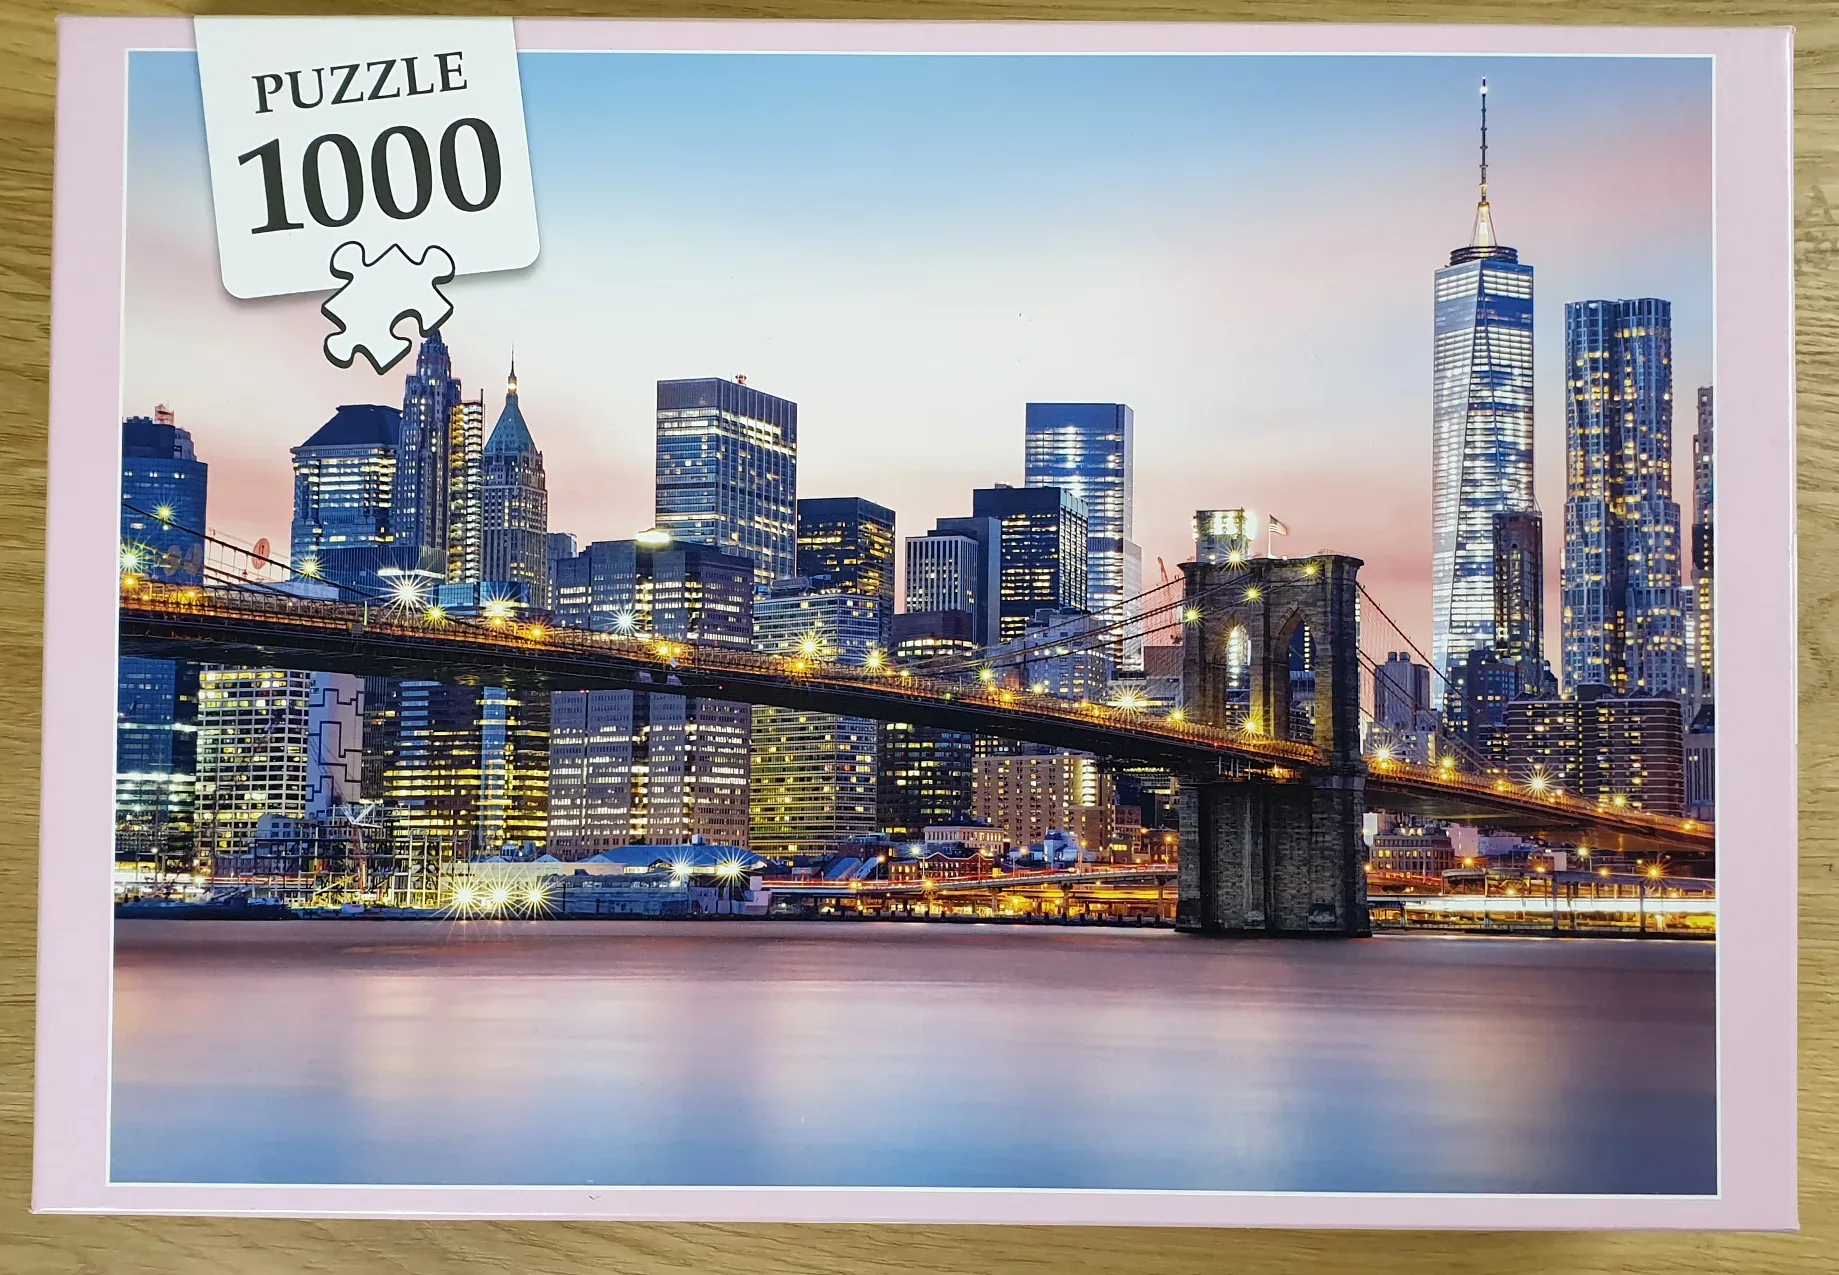 Produktbild des 1000 Teile Puzzles mit der New York Skyline von vorne